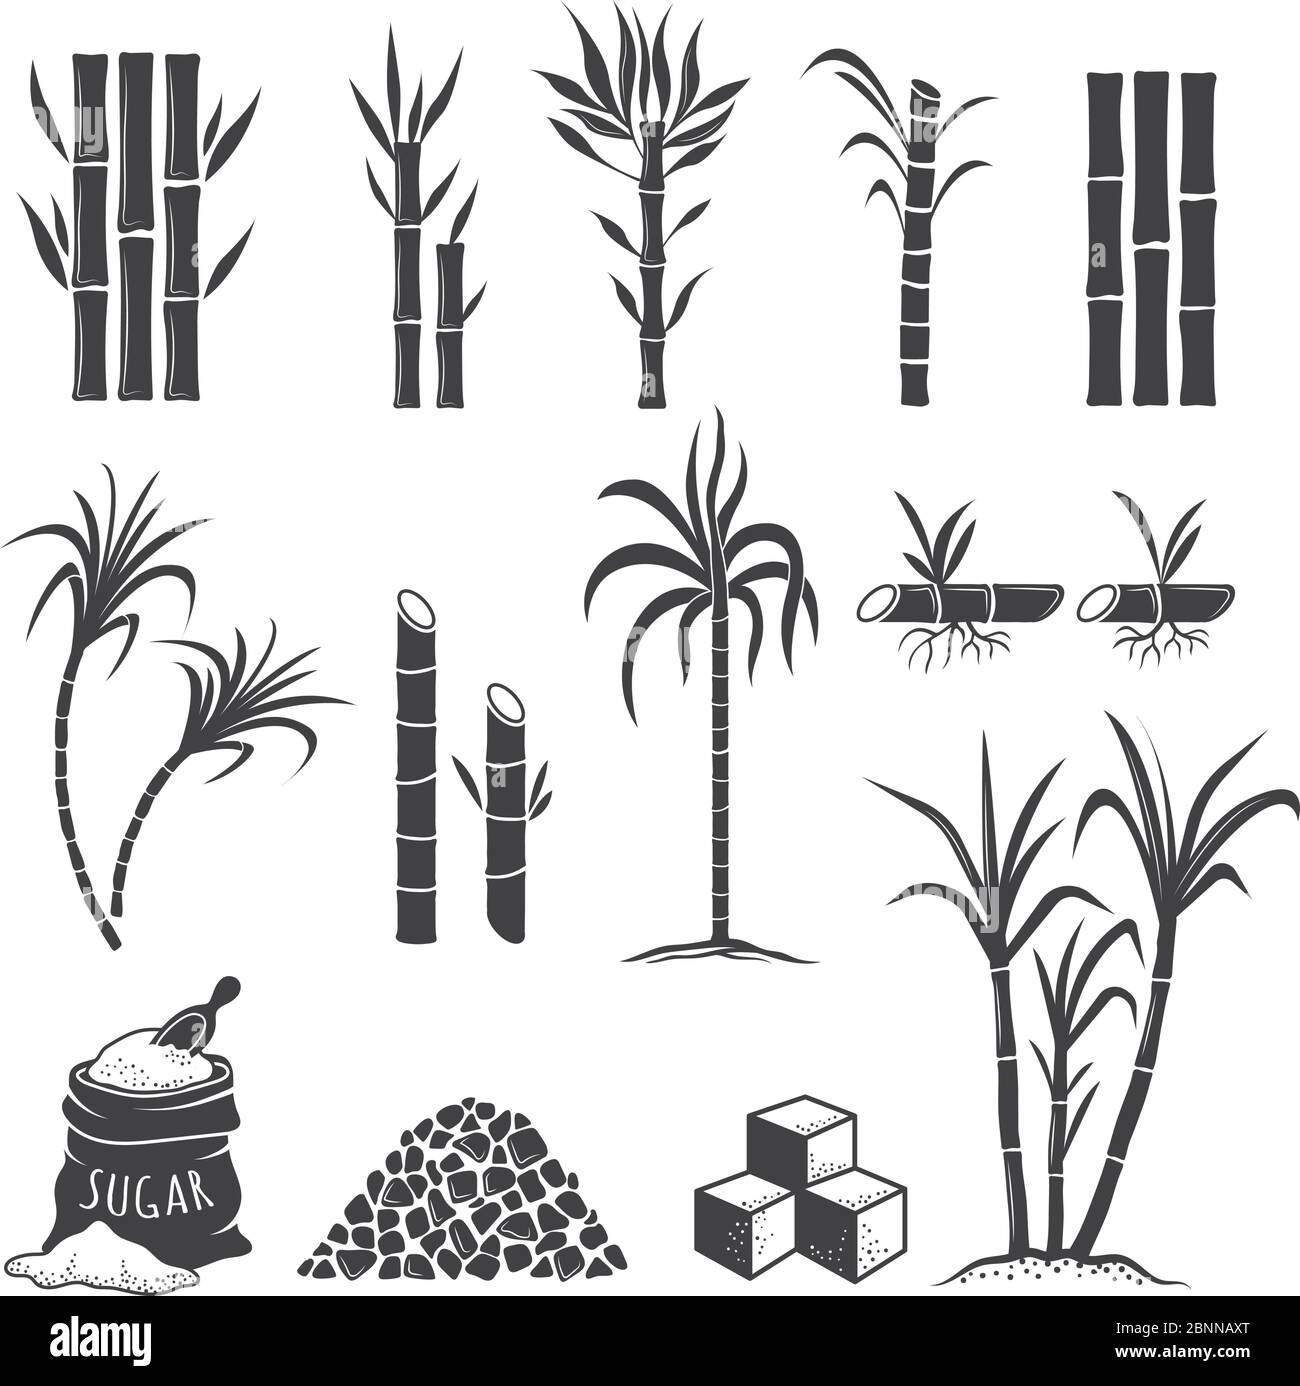 Symboles de la ferme de canne à sucre. Bonbons champ récolte de plantes de broyage illustrations vectorielles colorées isolées sur fond blanc Illustration de Vecteur